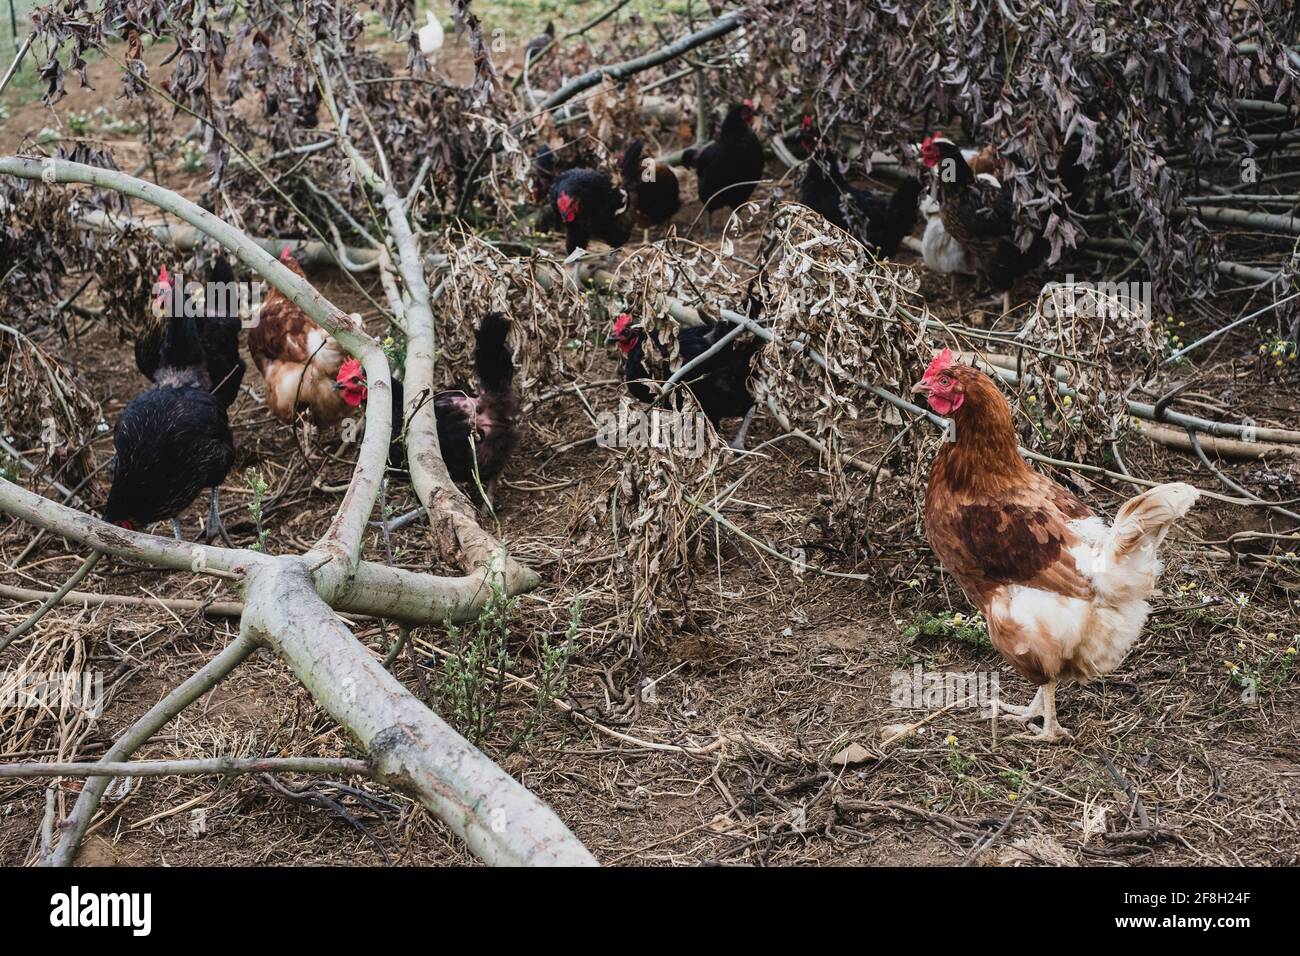 Rebaño de pollos negros y marrones que pecan entre ramas de árboles caídos. Foto de stock